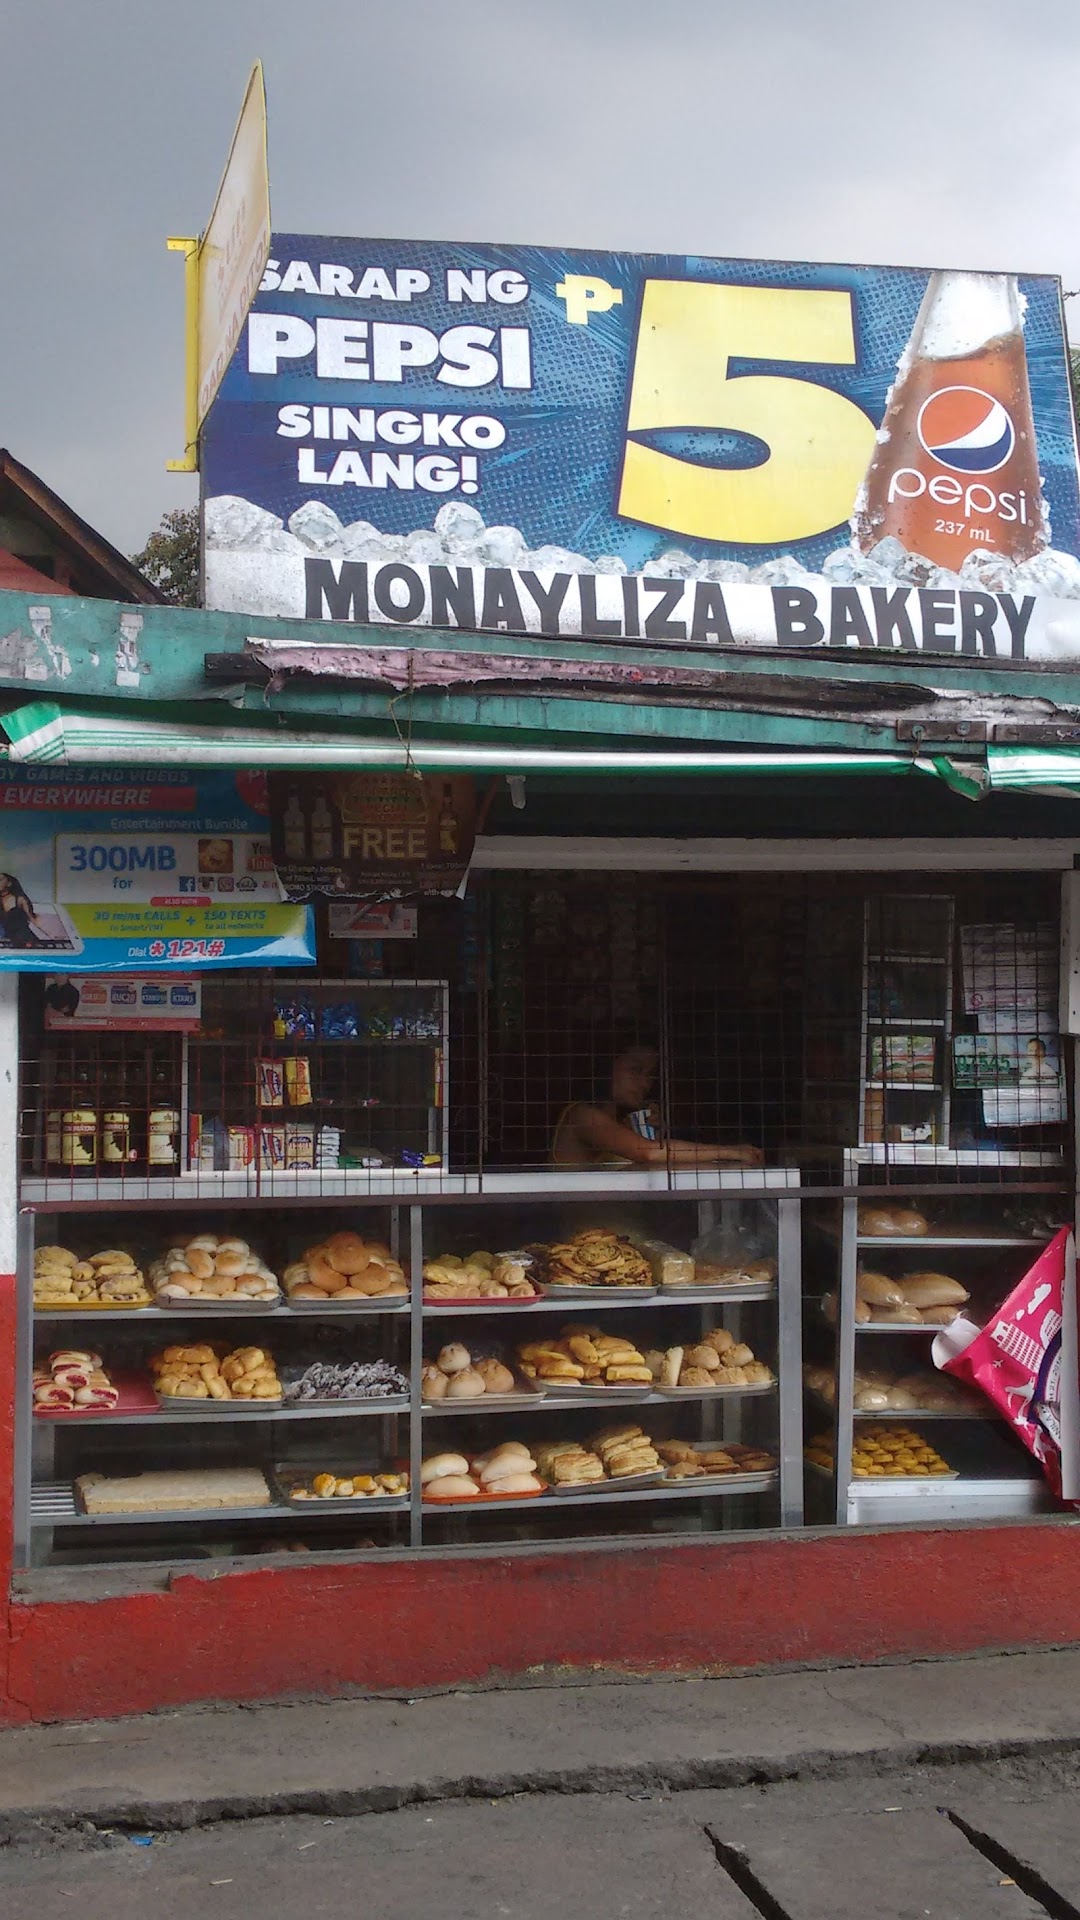 Monaliza Bakery & Tapsihan